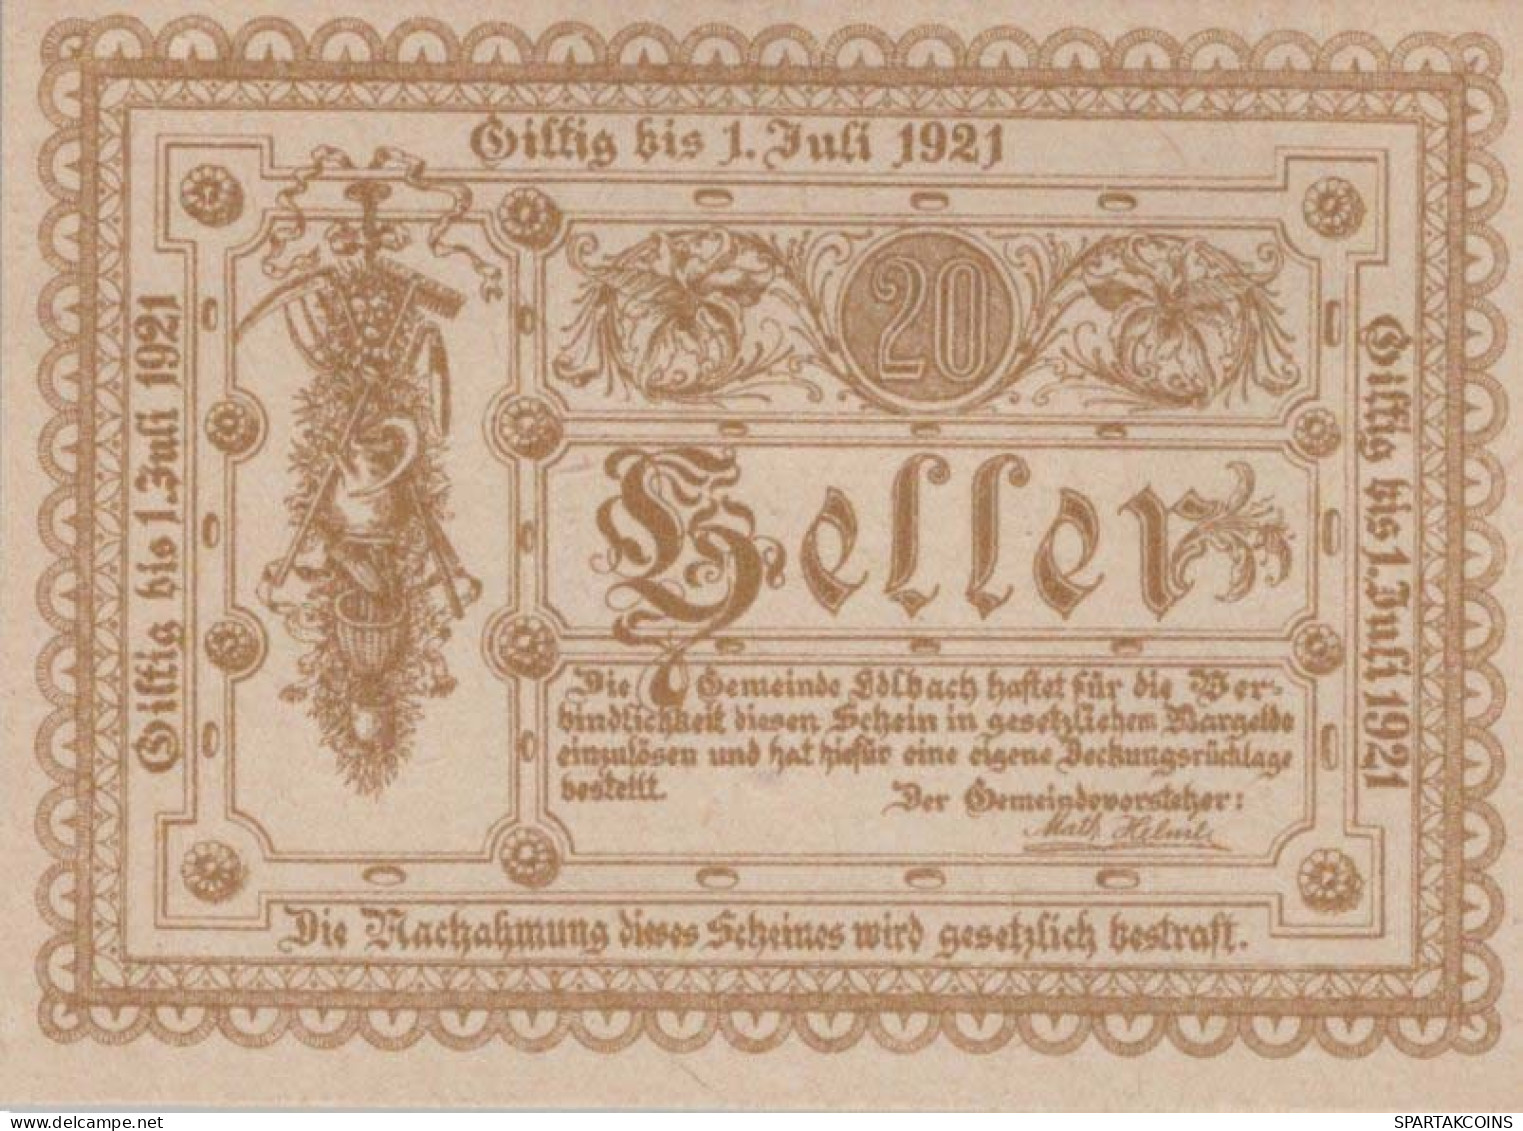 20 HELLER 1921 Stadt EDLBACH Oberösterreich Österreich Notgeld Banknote #PE596 - [11] Lokale Uitgaven